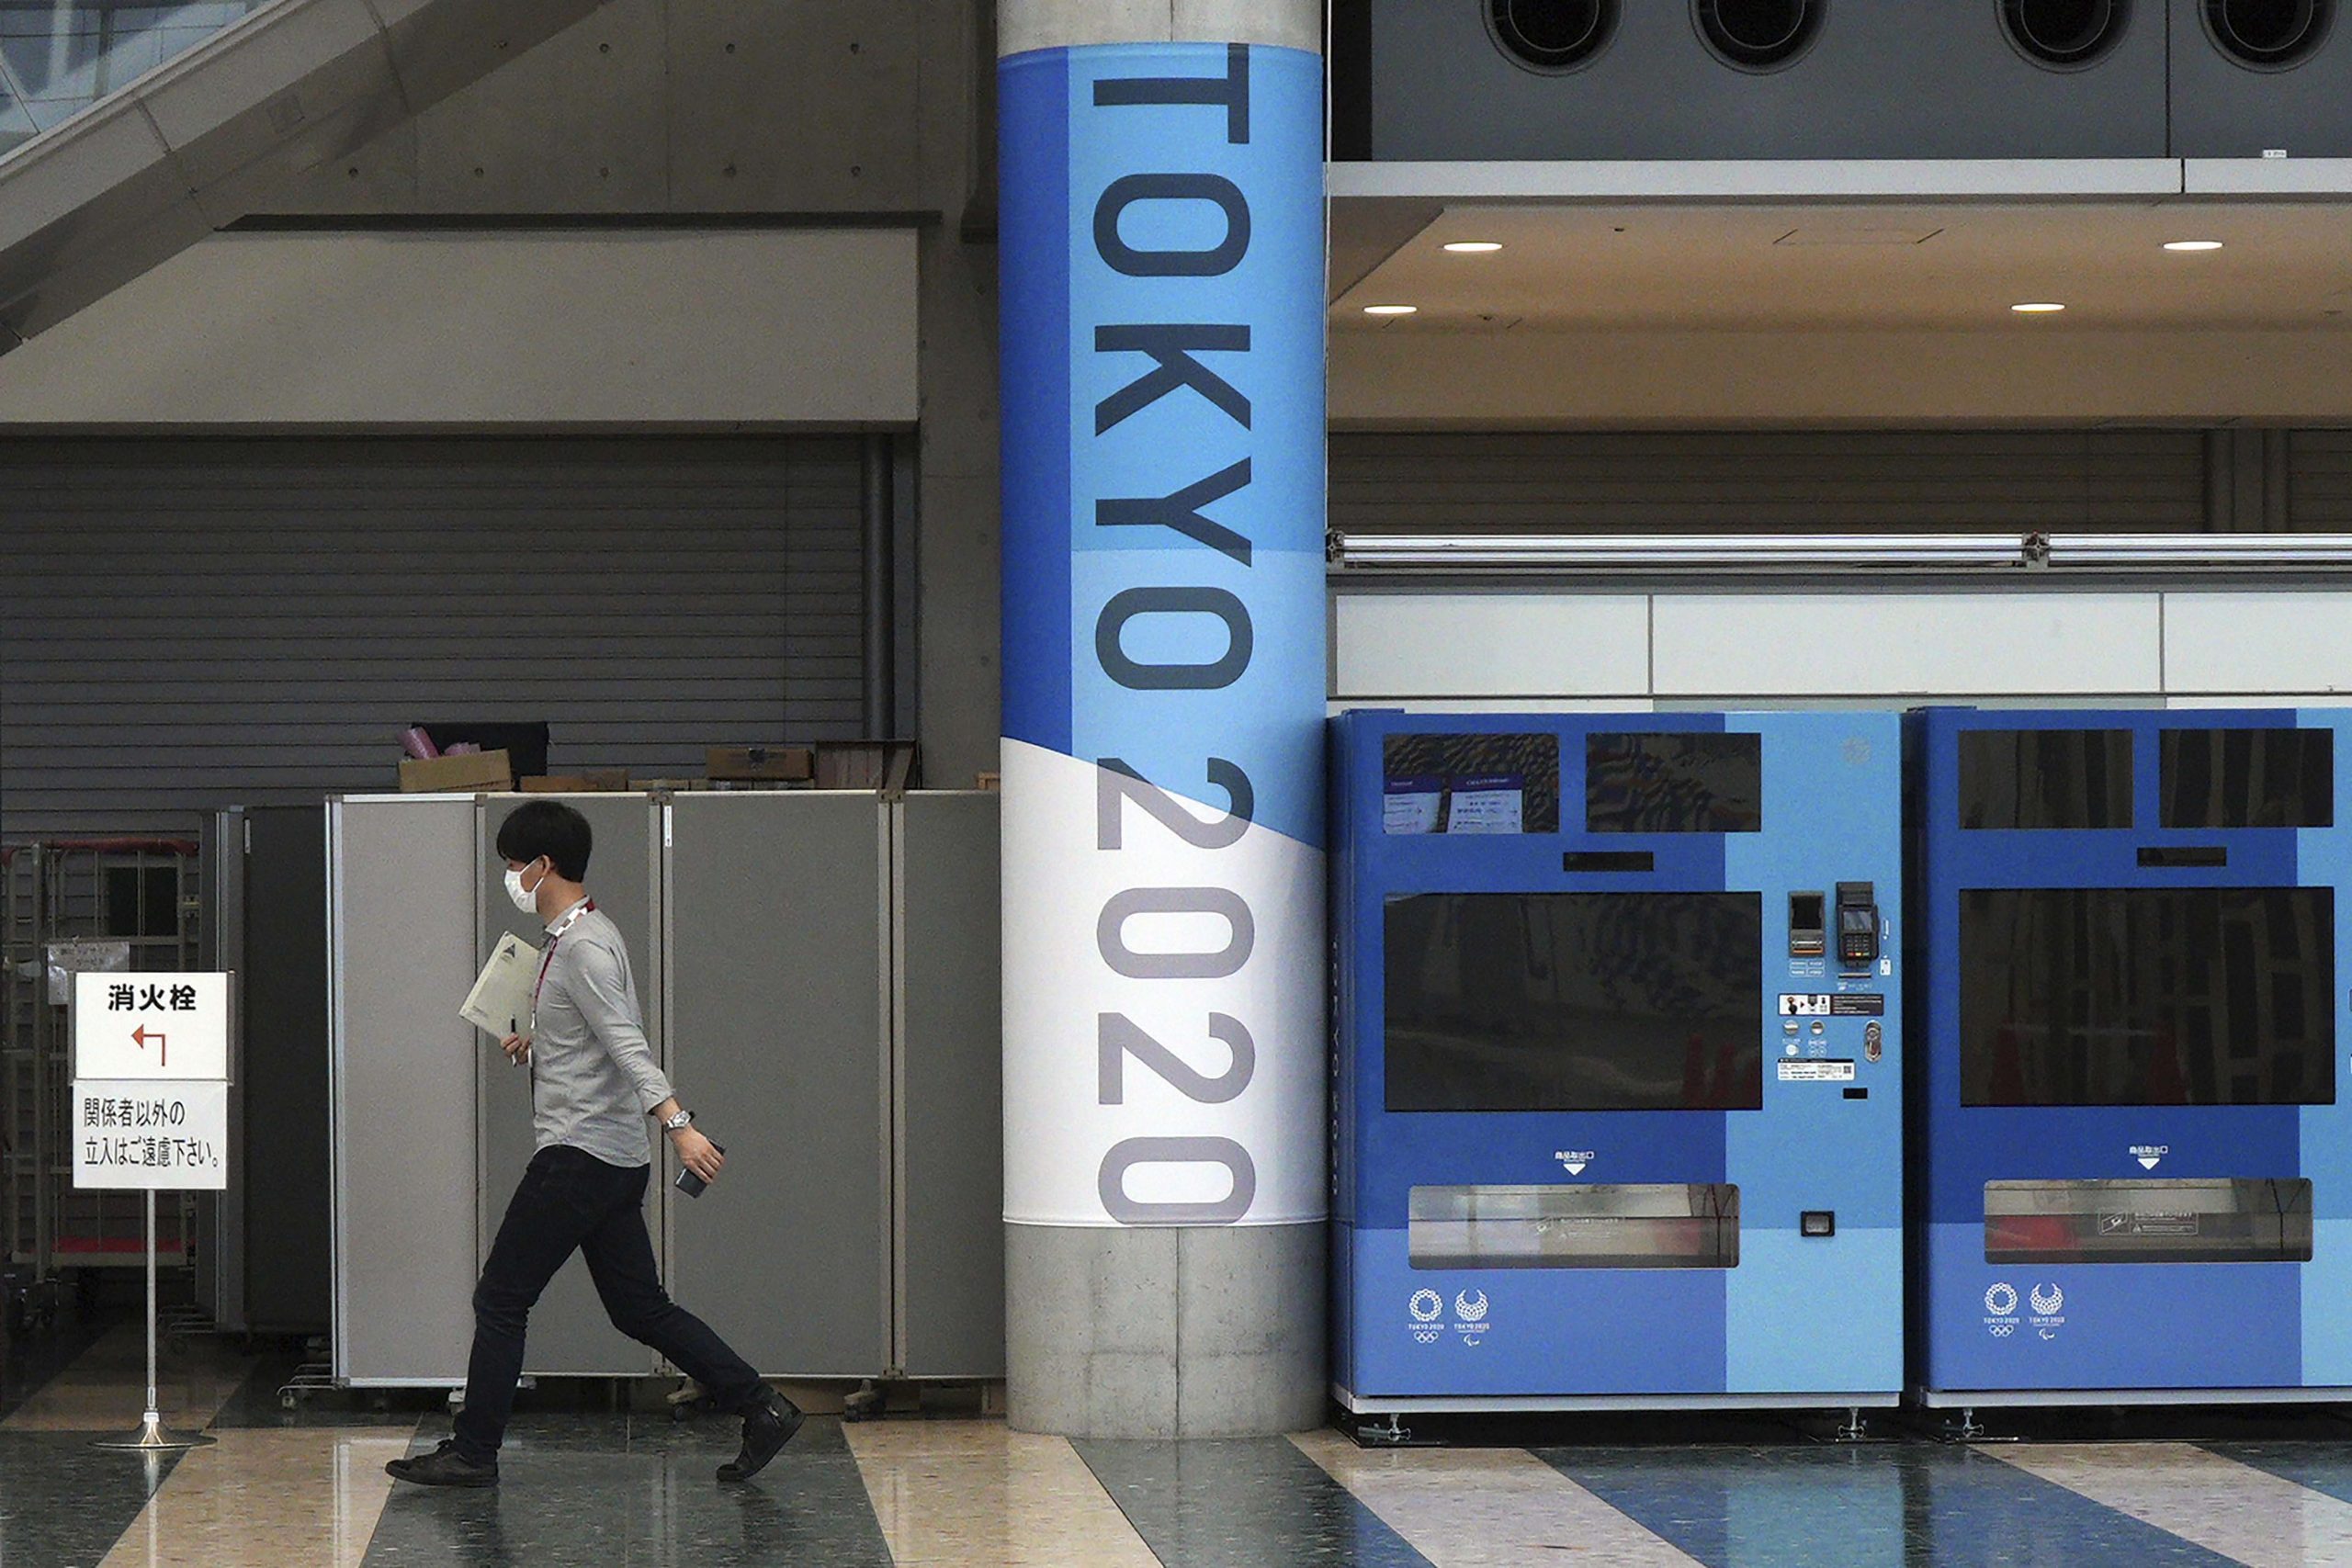 टोक्यो ओलंपिक में खिलाड़ियों के कोरोना पॉजिटिव पाए जाने पर क्या होंने नियम?